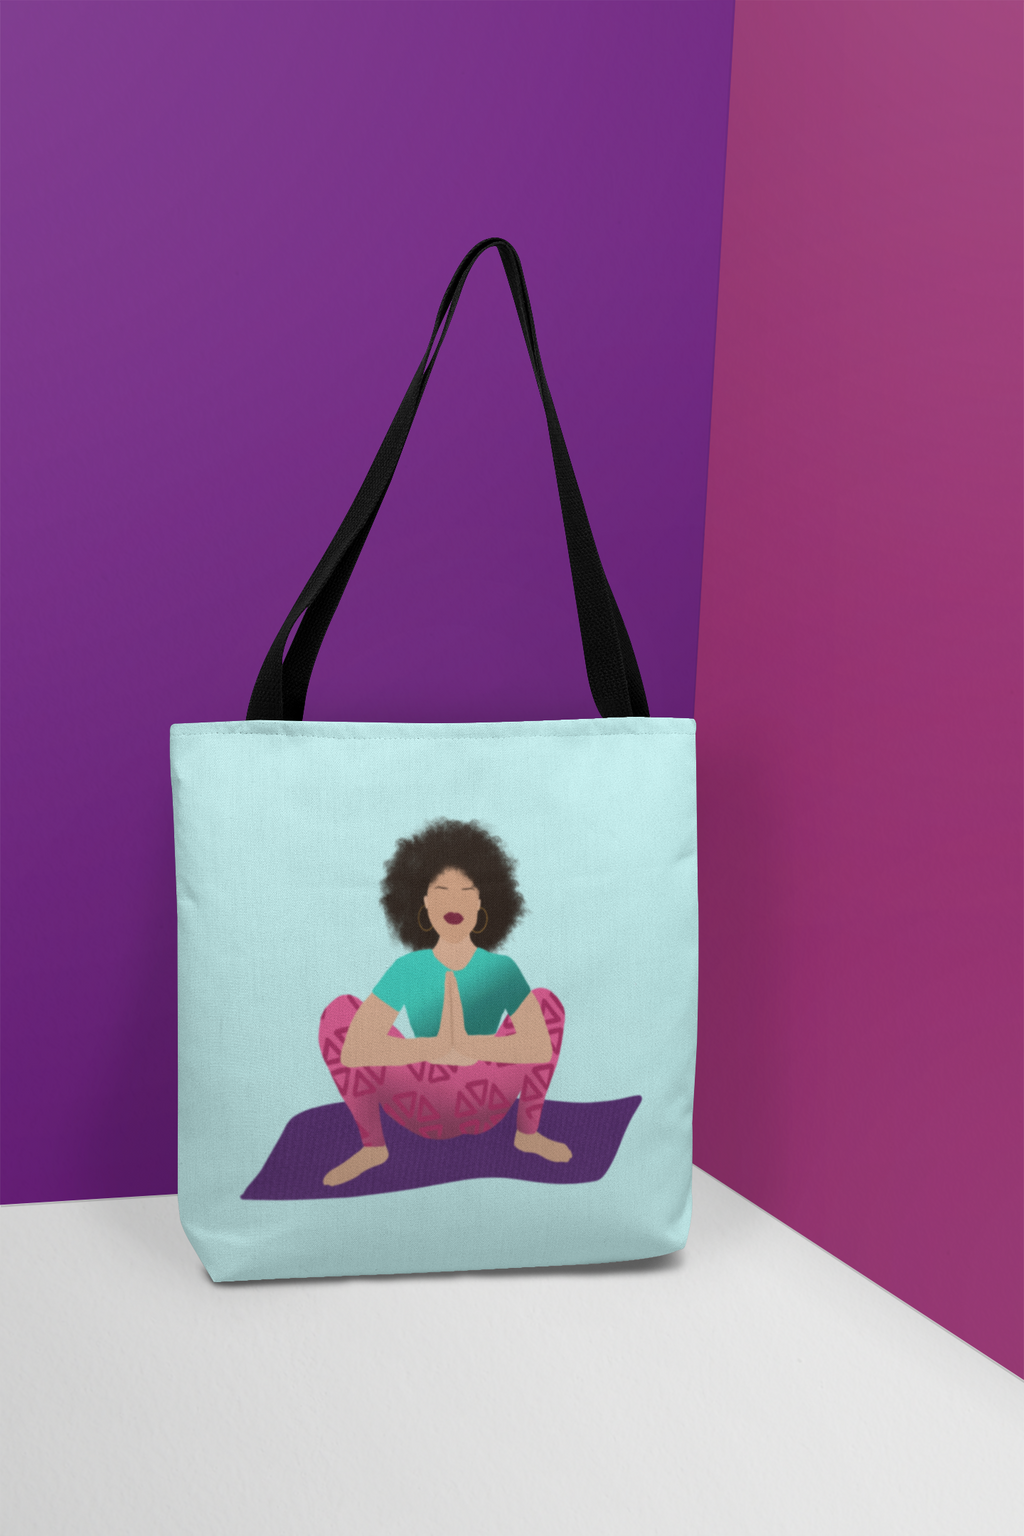 The Garland tote bag. Created by Yoga and Mahogany.